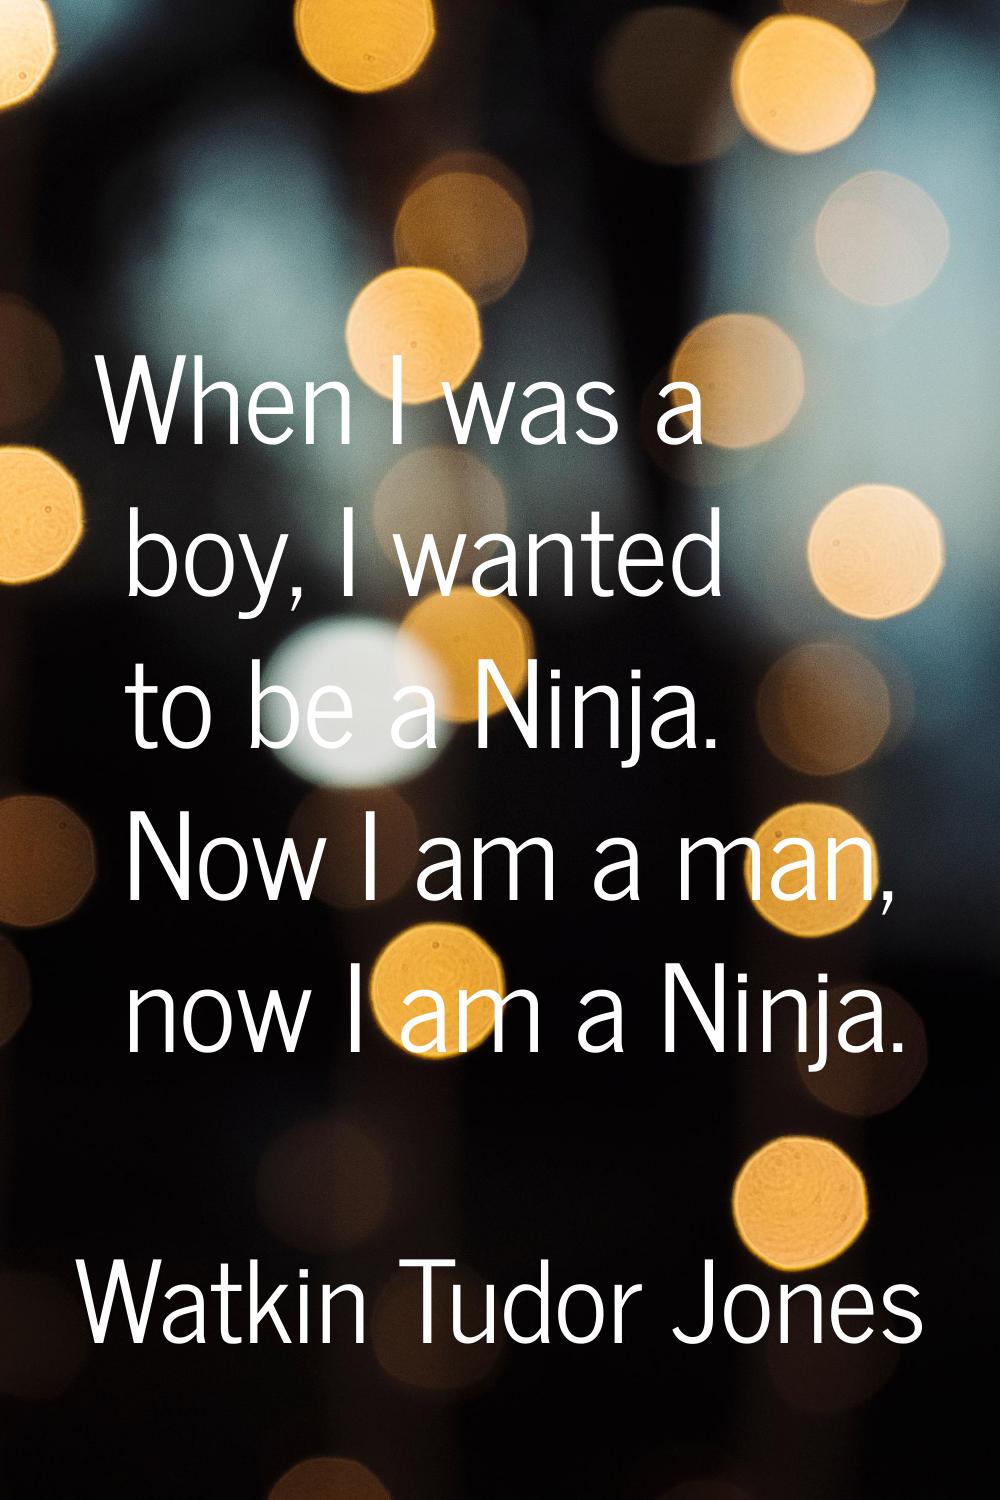 When I was a boy, I wanted to be a Ninja. Now I am a man, now I am a Ninja.